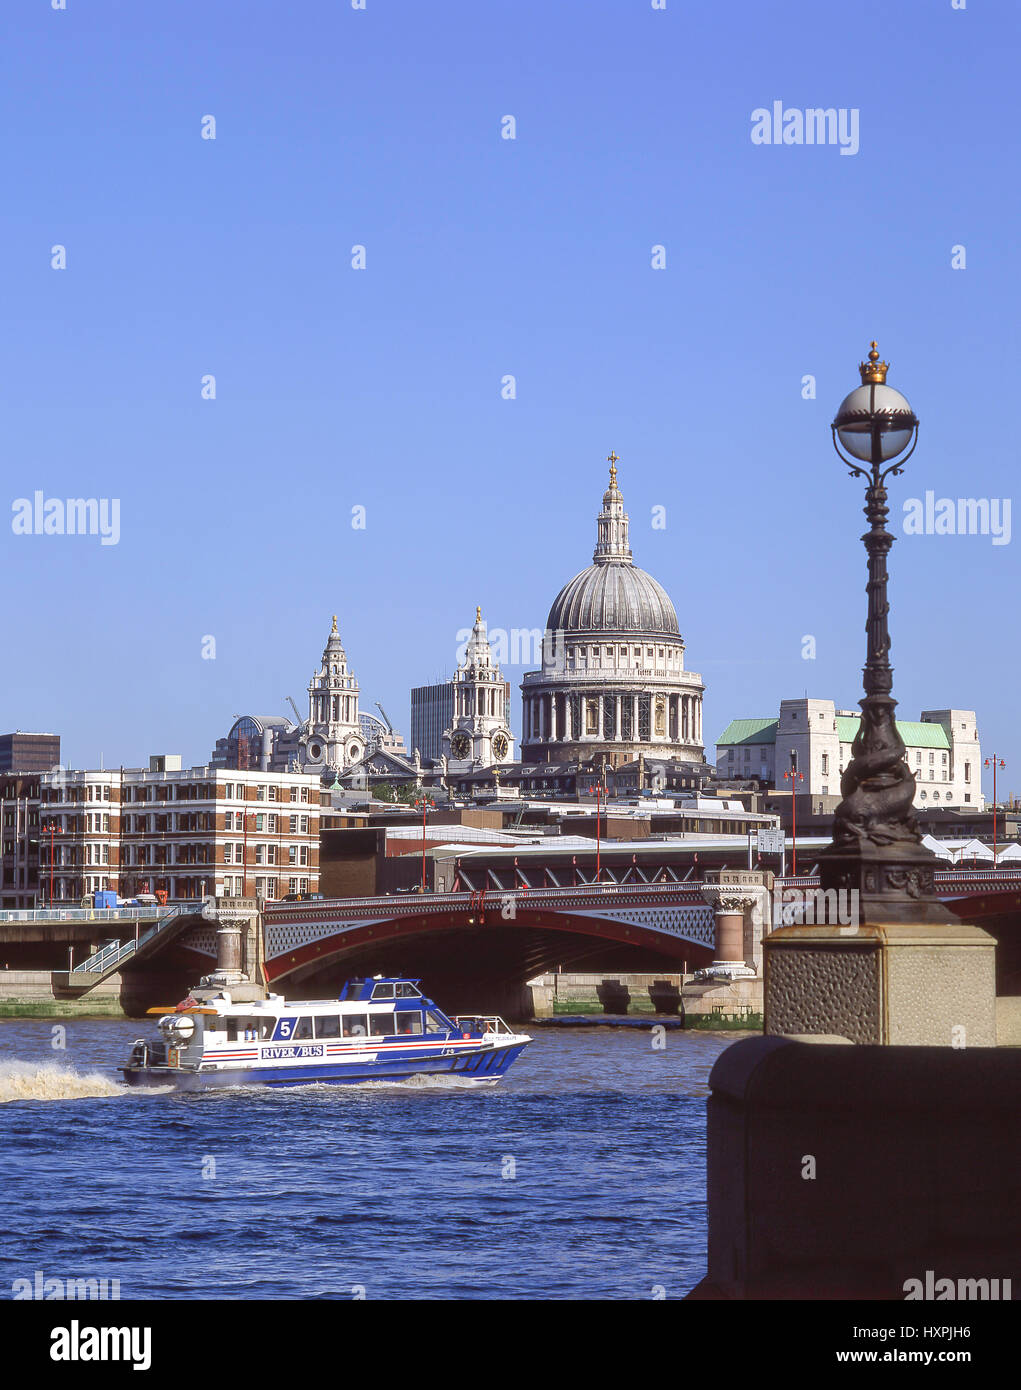 La Cathédrale St Paul et Blackfriars Bridge sur la Tamise, Ville de London, Greater London, Angleterre, Royaume-Uni Banque D'Images